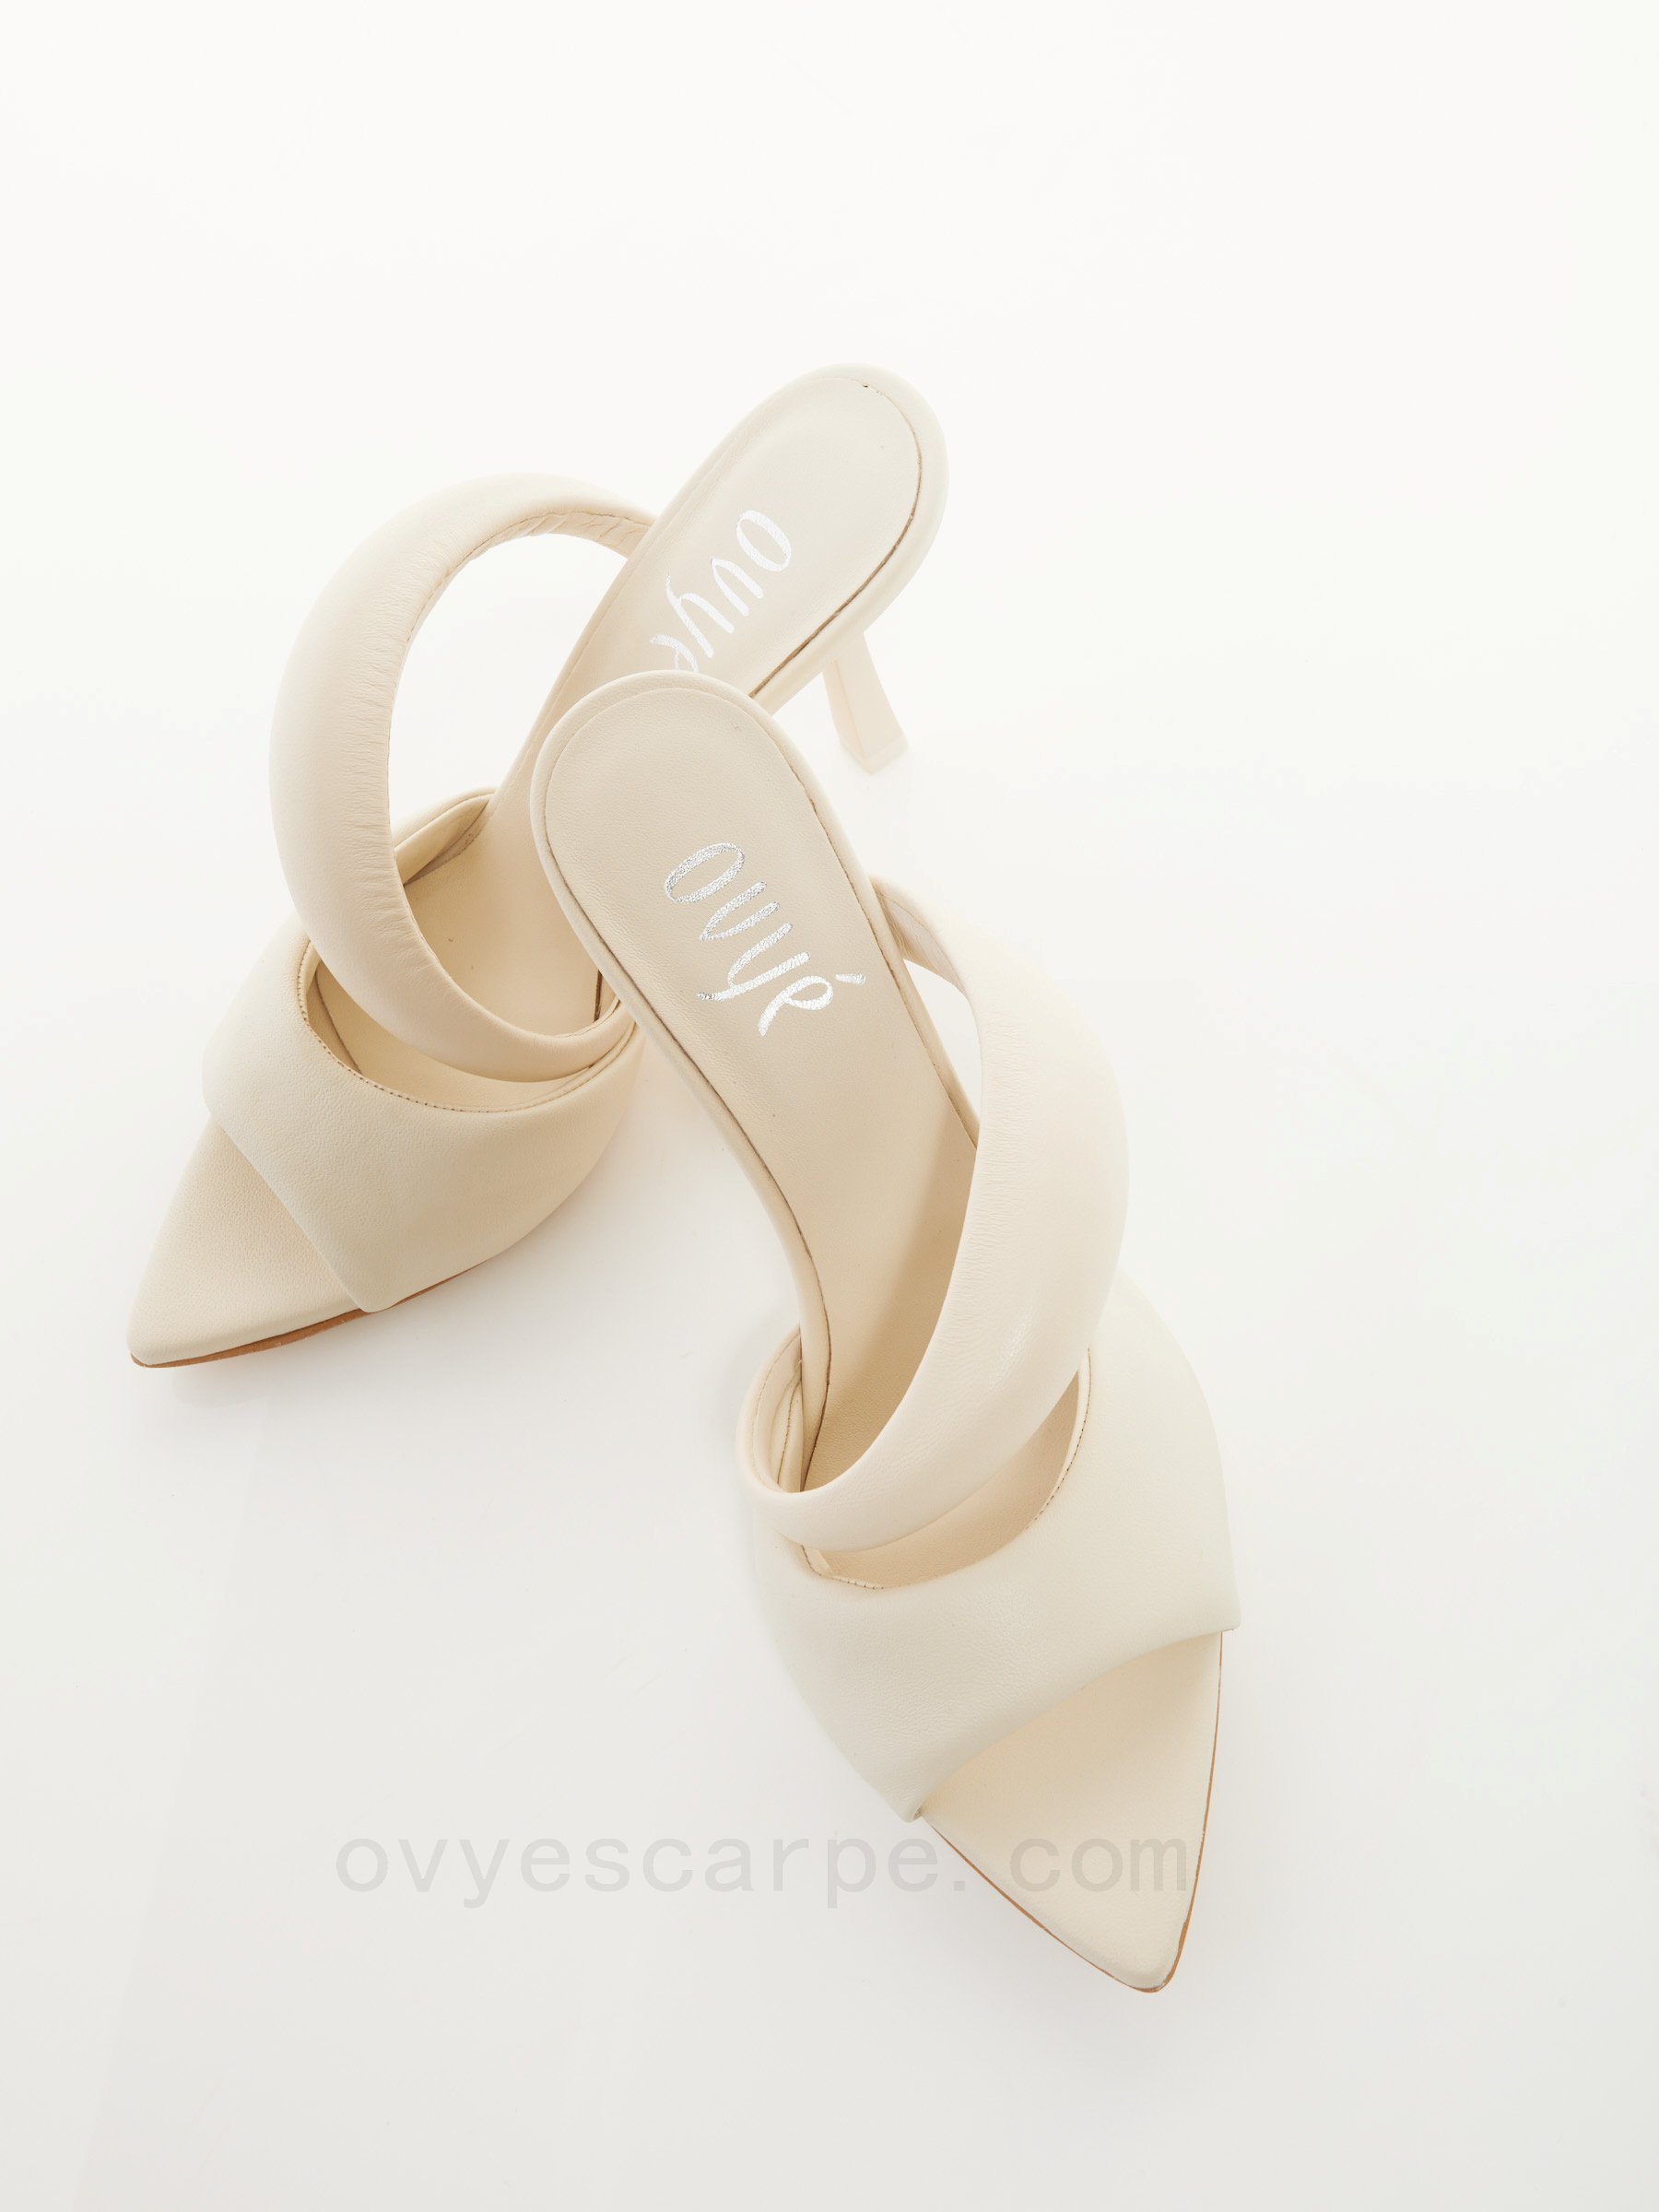 Codice Sconto Leather Heel Sandals F08161027-0429 Negozio Ufficiale